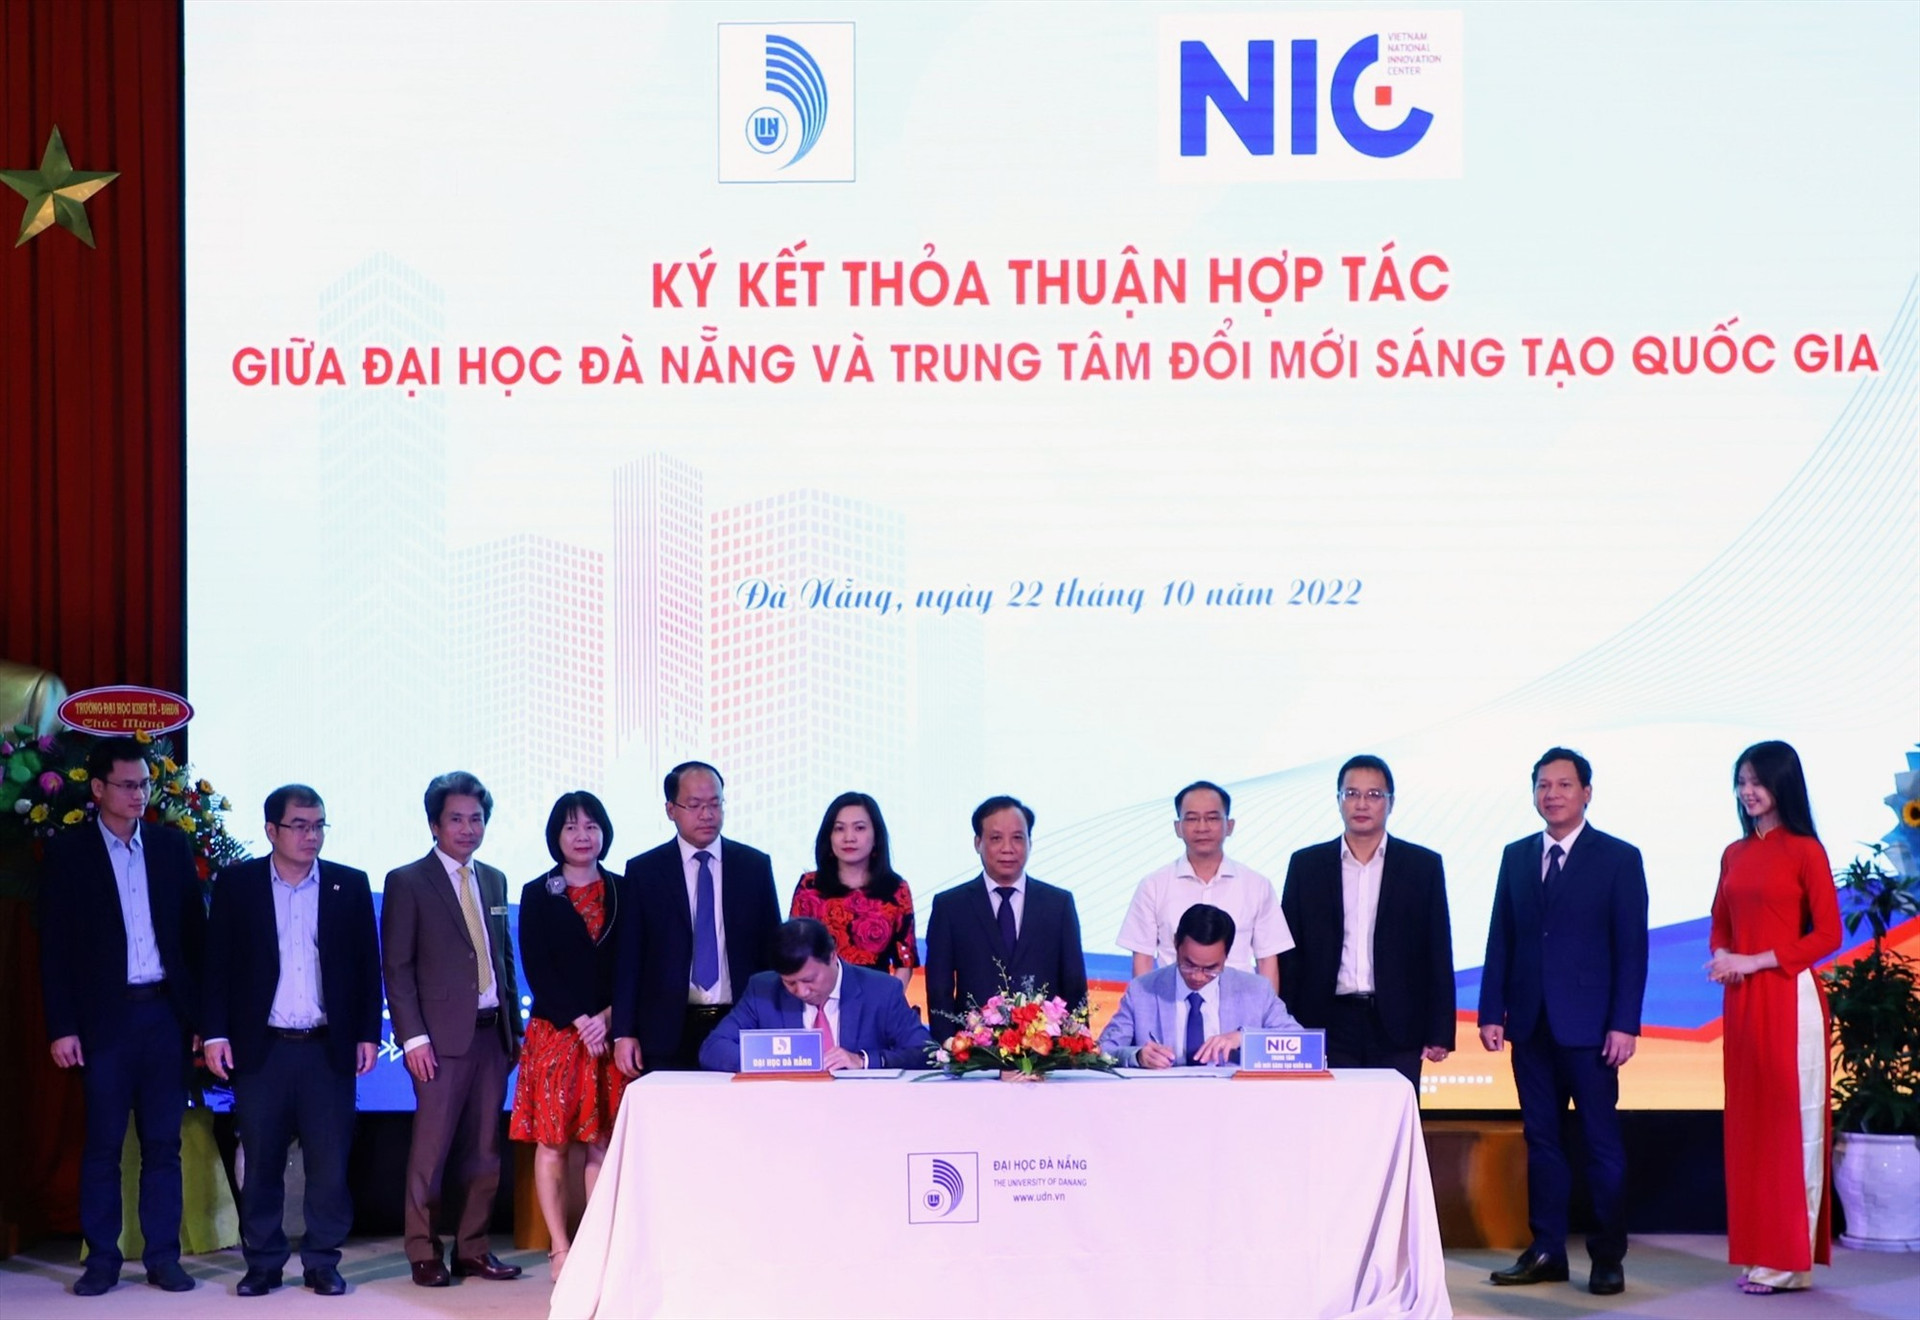 Quảng cảnh ký kết hợp tác giữa NIC và Đại học Đà Nẵng. Ảnh ĐHĐN